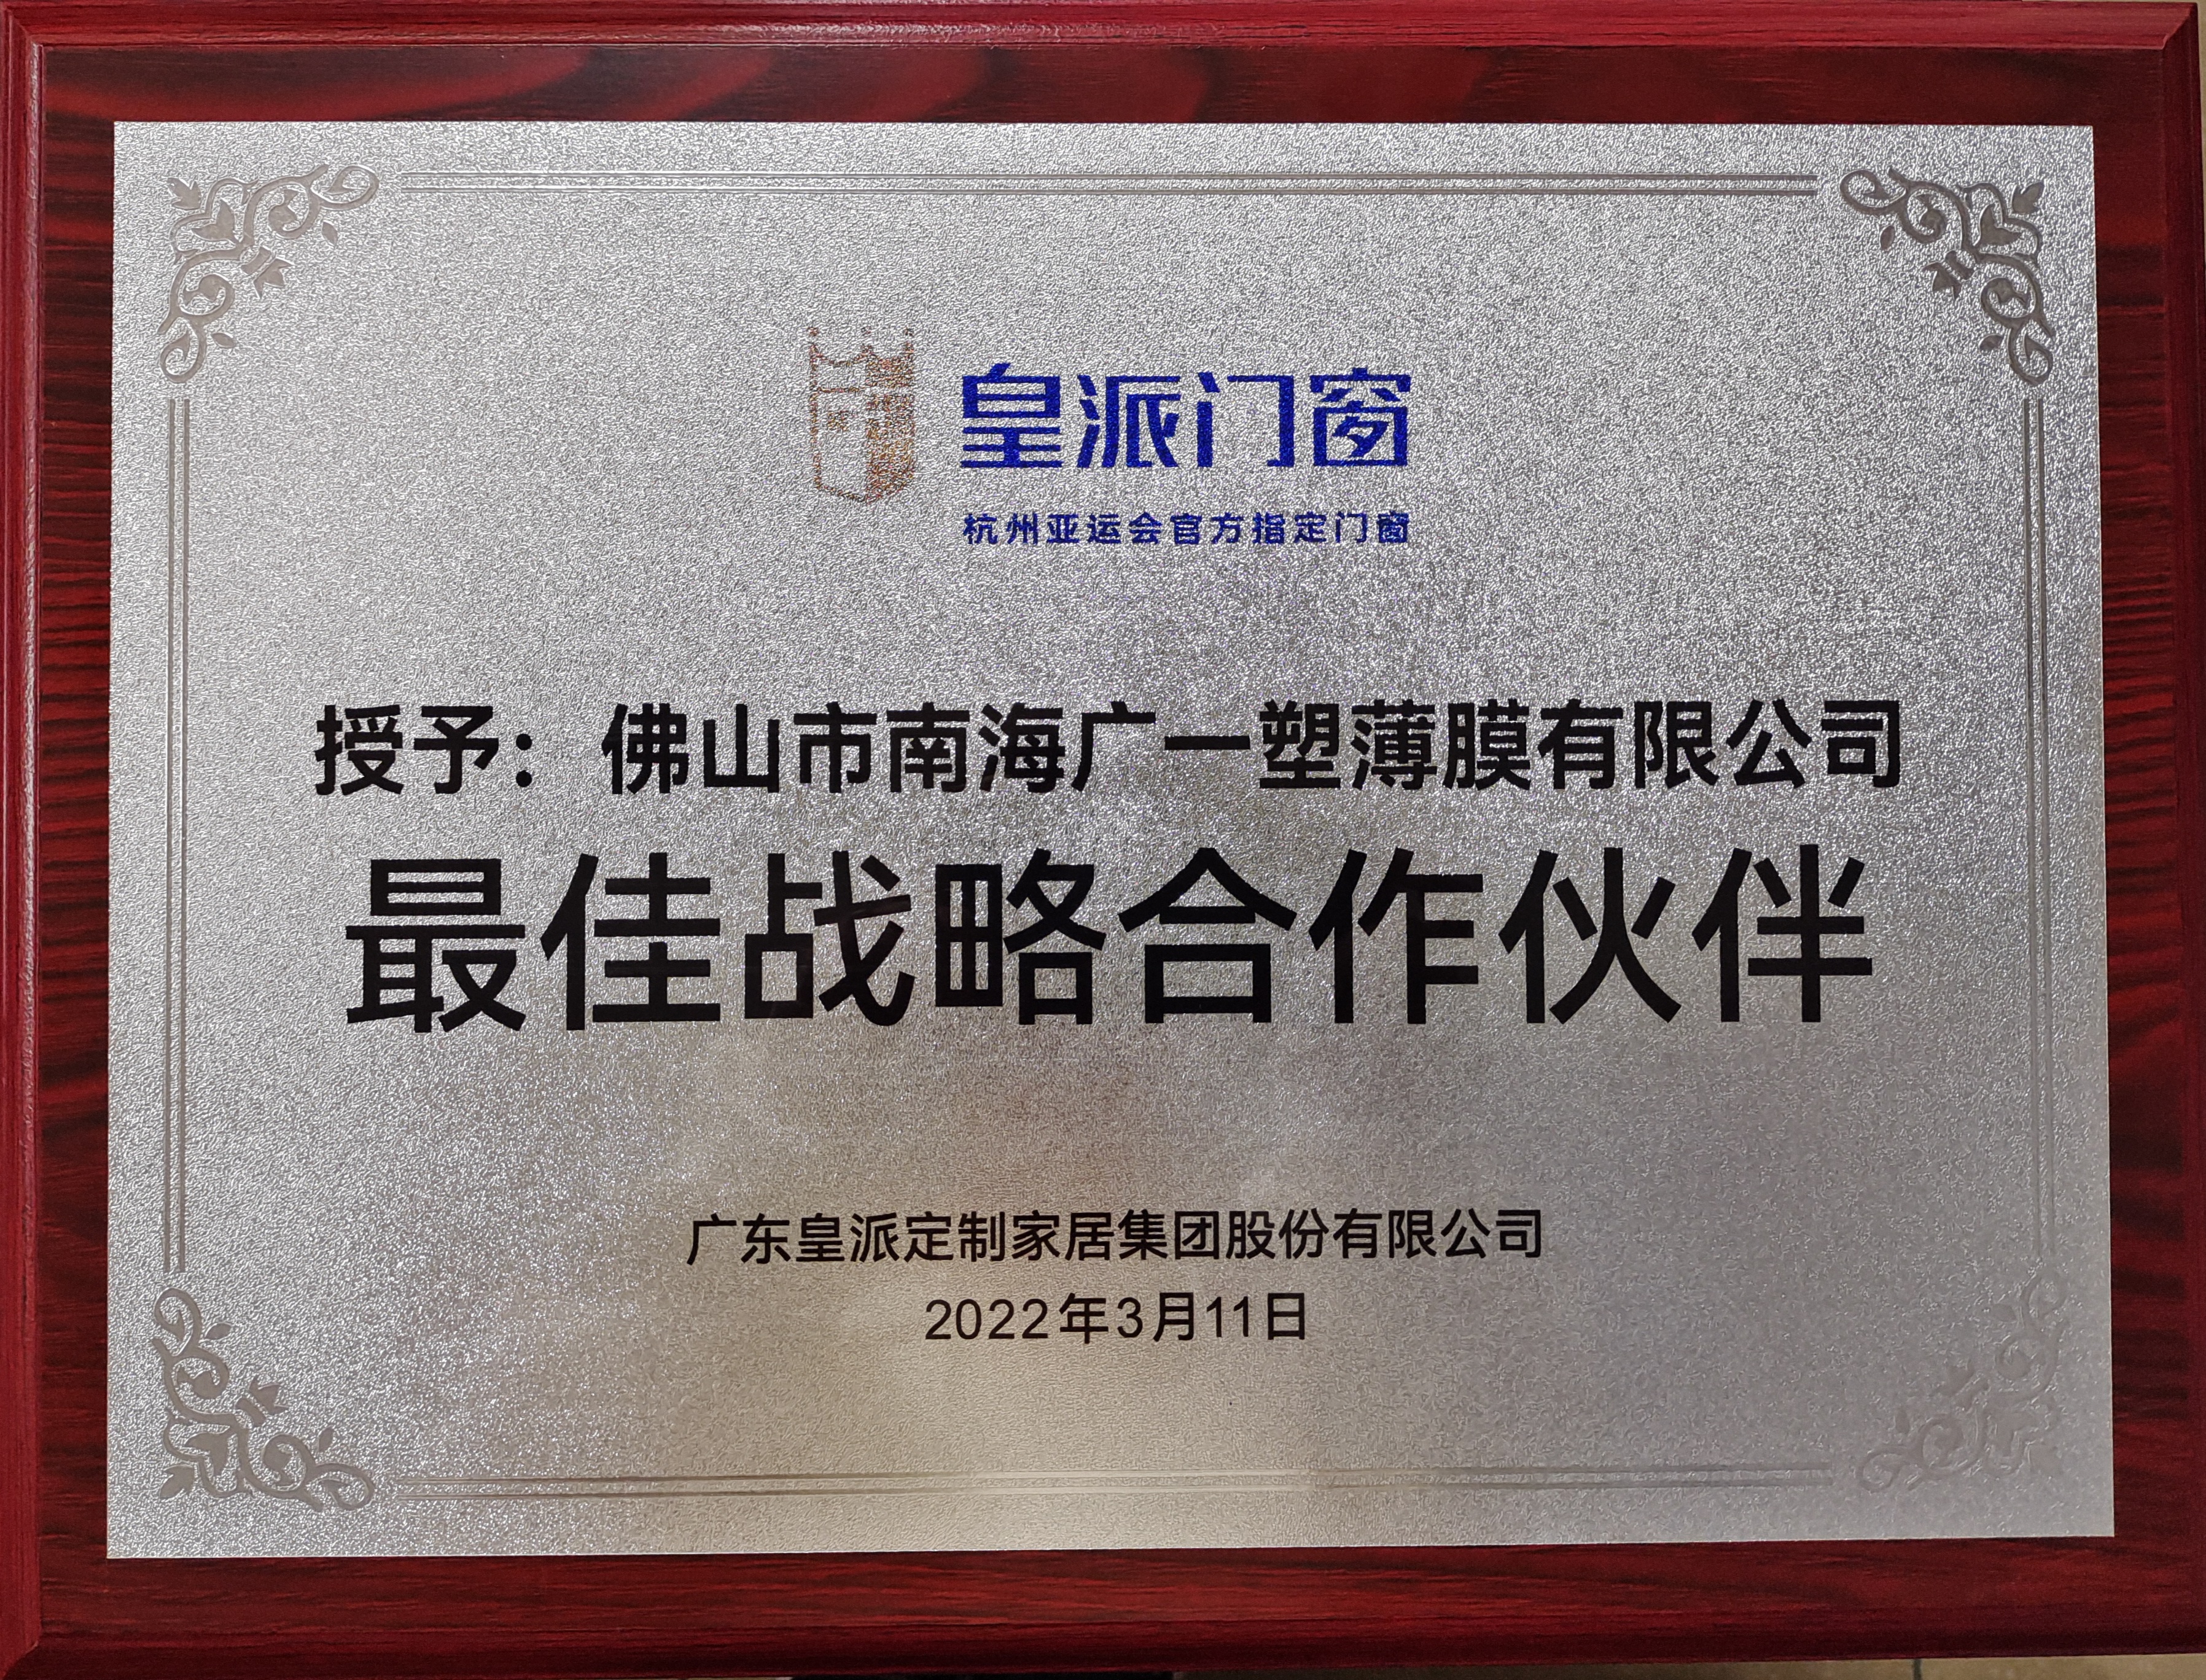 祝贺我司成为中国门窗标杆企业之一的皇派门窗的最佳战略合作伙伴